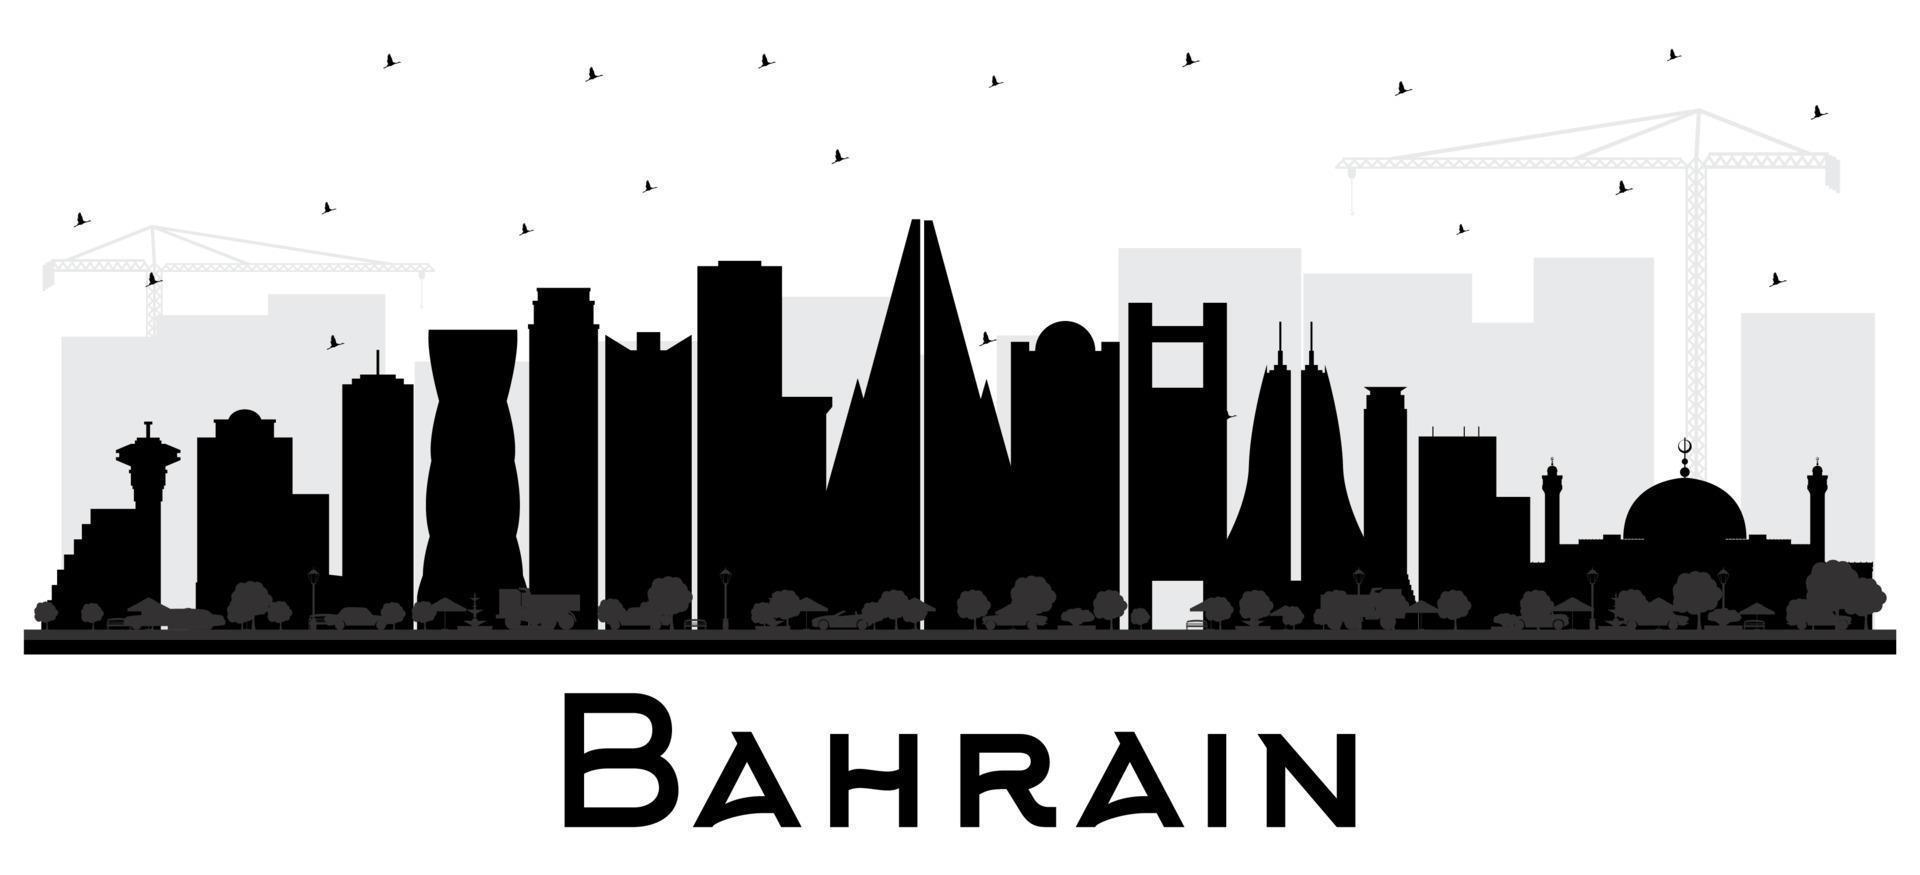 bahrain city skyline silhouette mit schwarzen gebäuden isoliert auf weiß. vektor